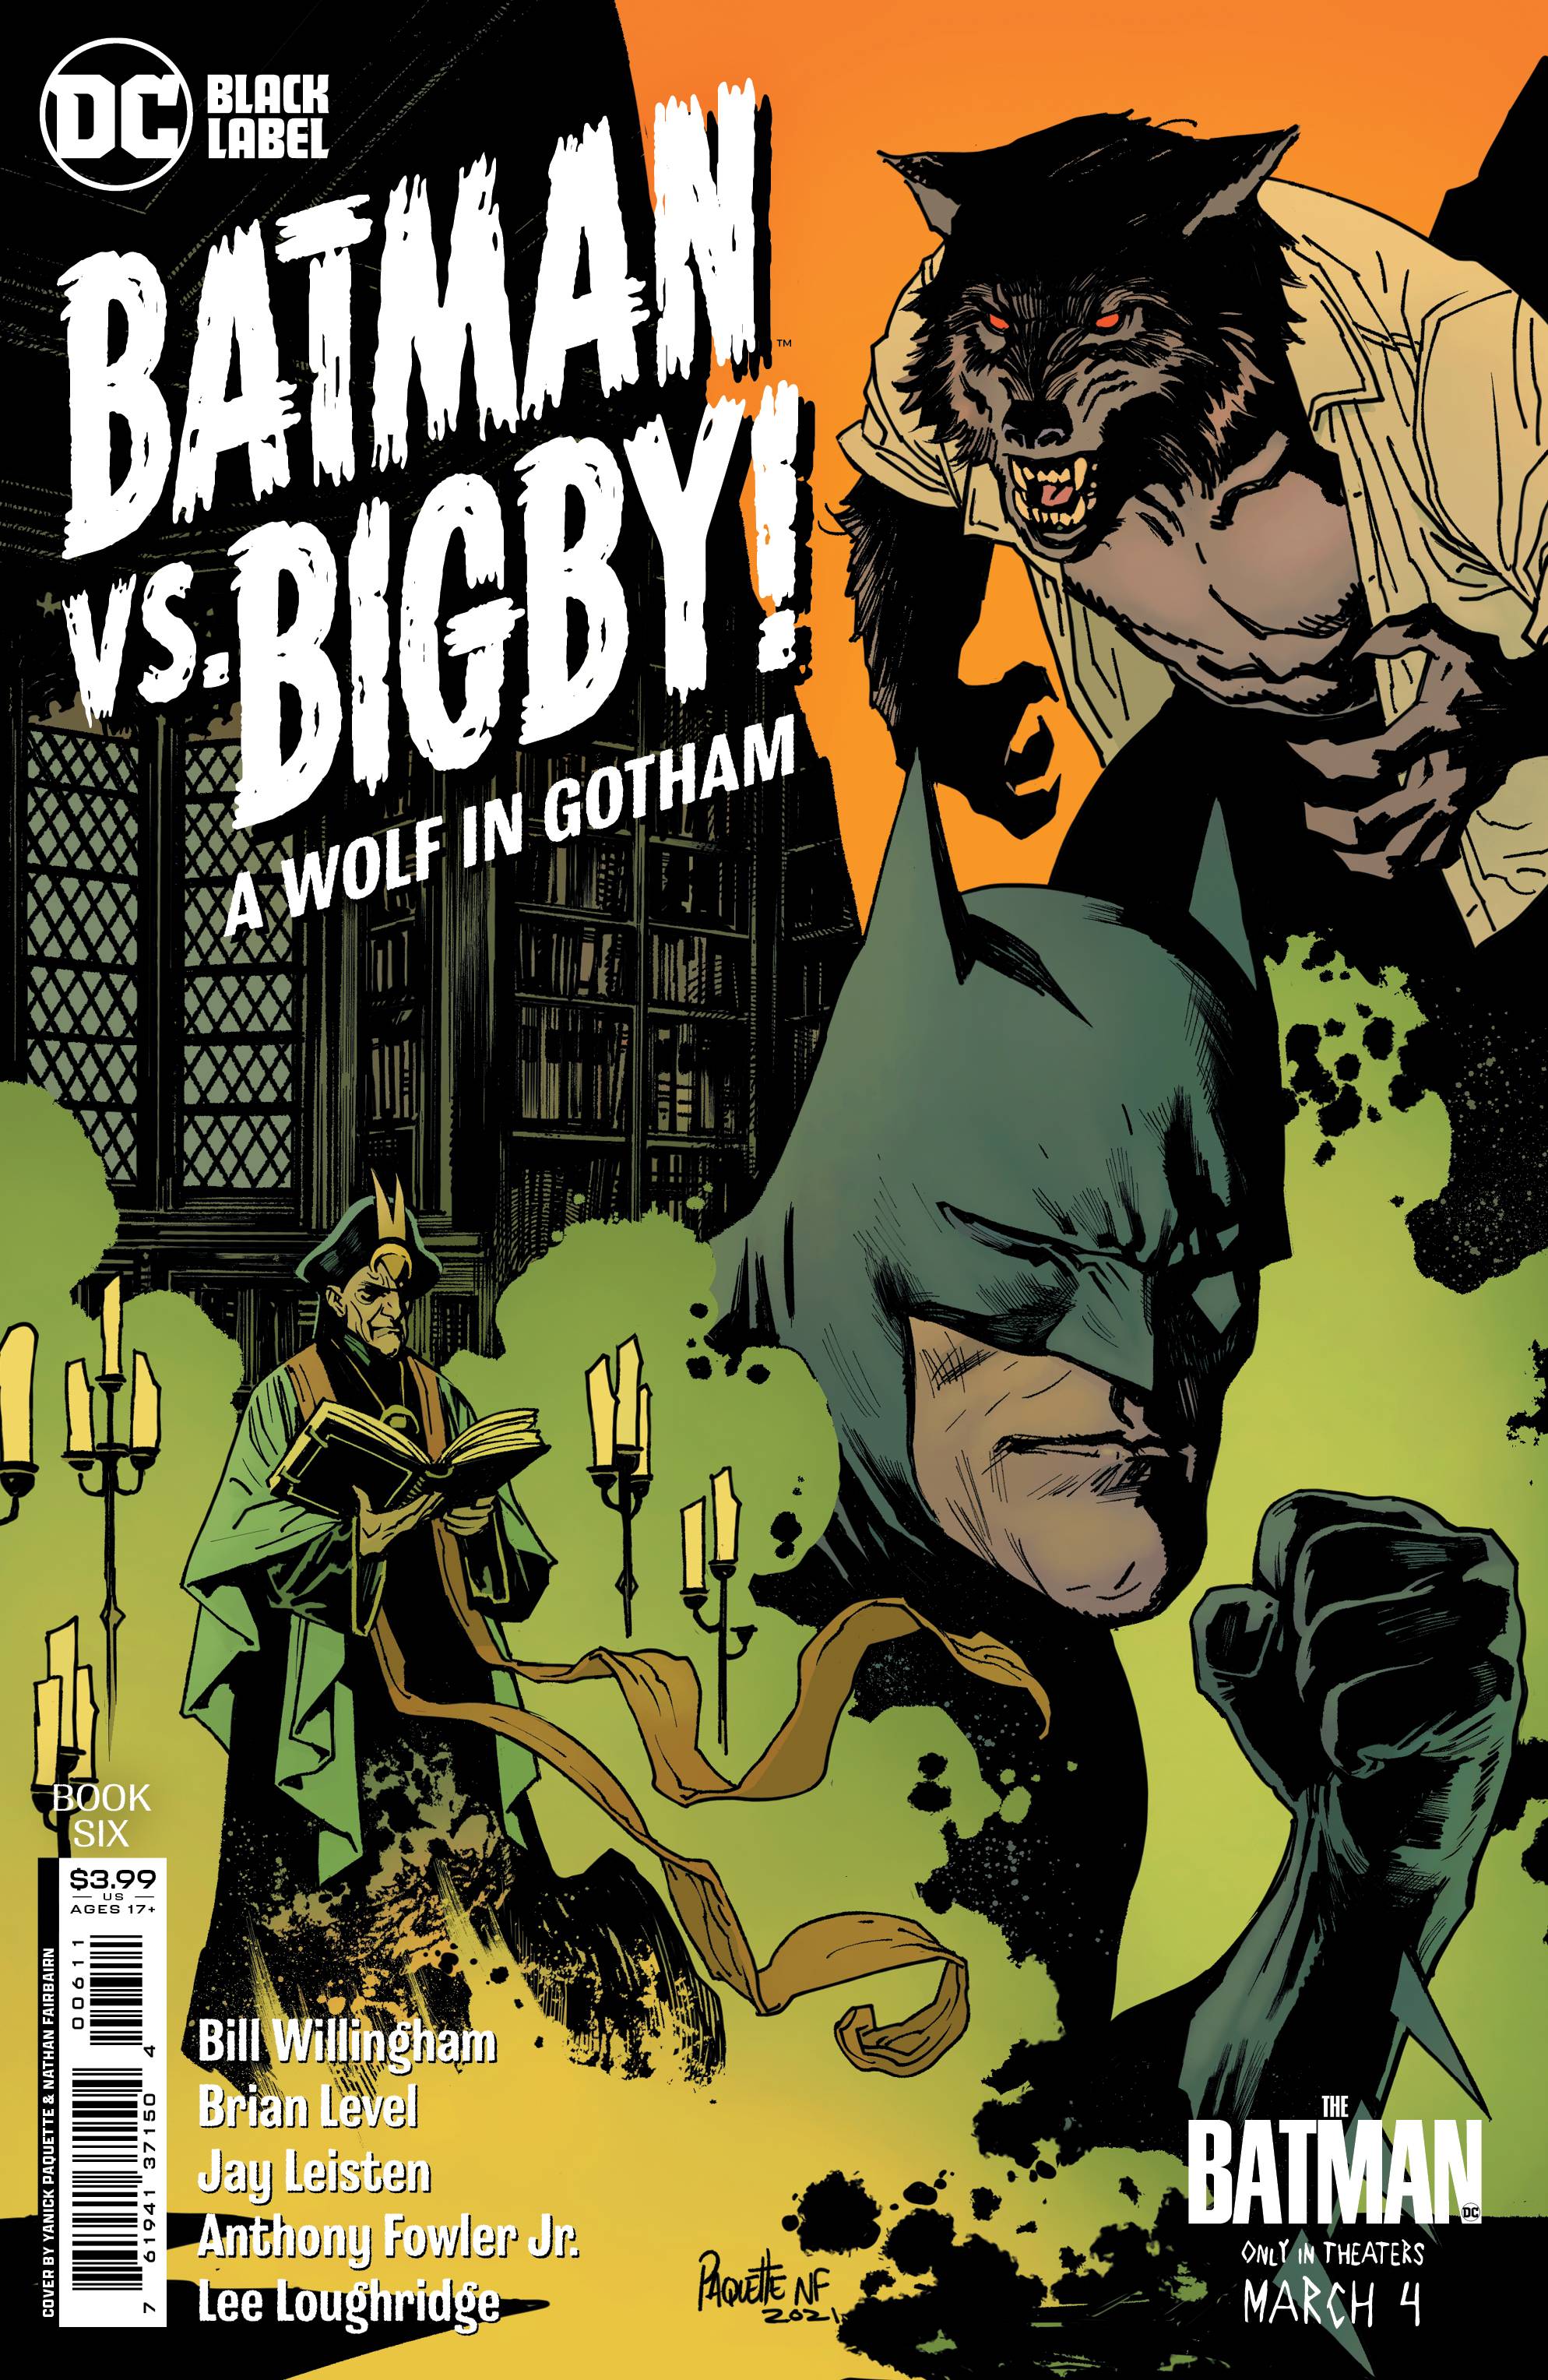 BATMAN VS BIGBY A WOLF IN GOTHAM #6 (OF 6) CVR A PAQUETTE (M